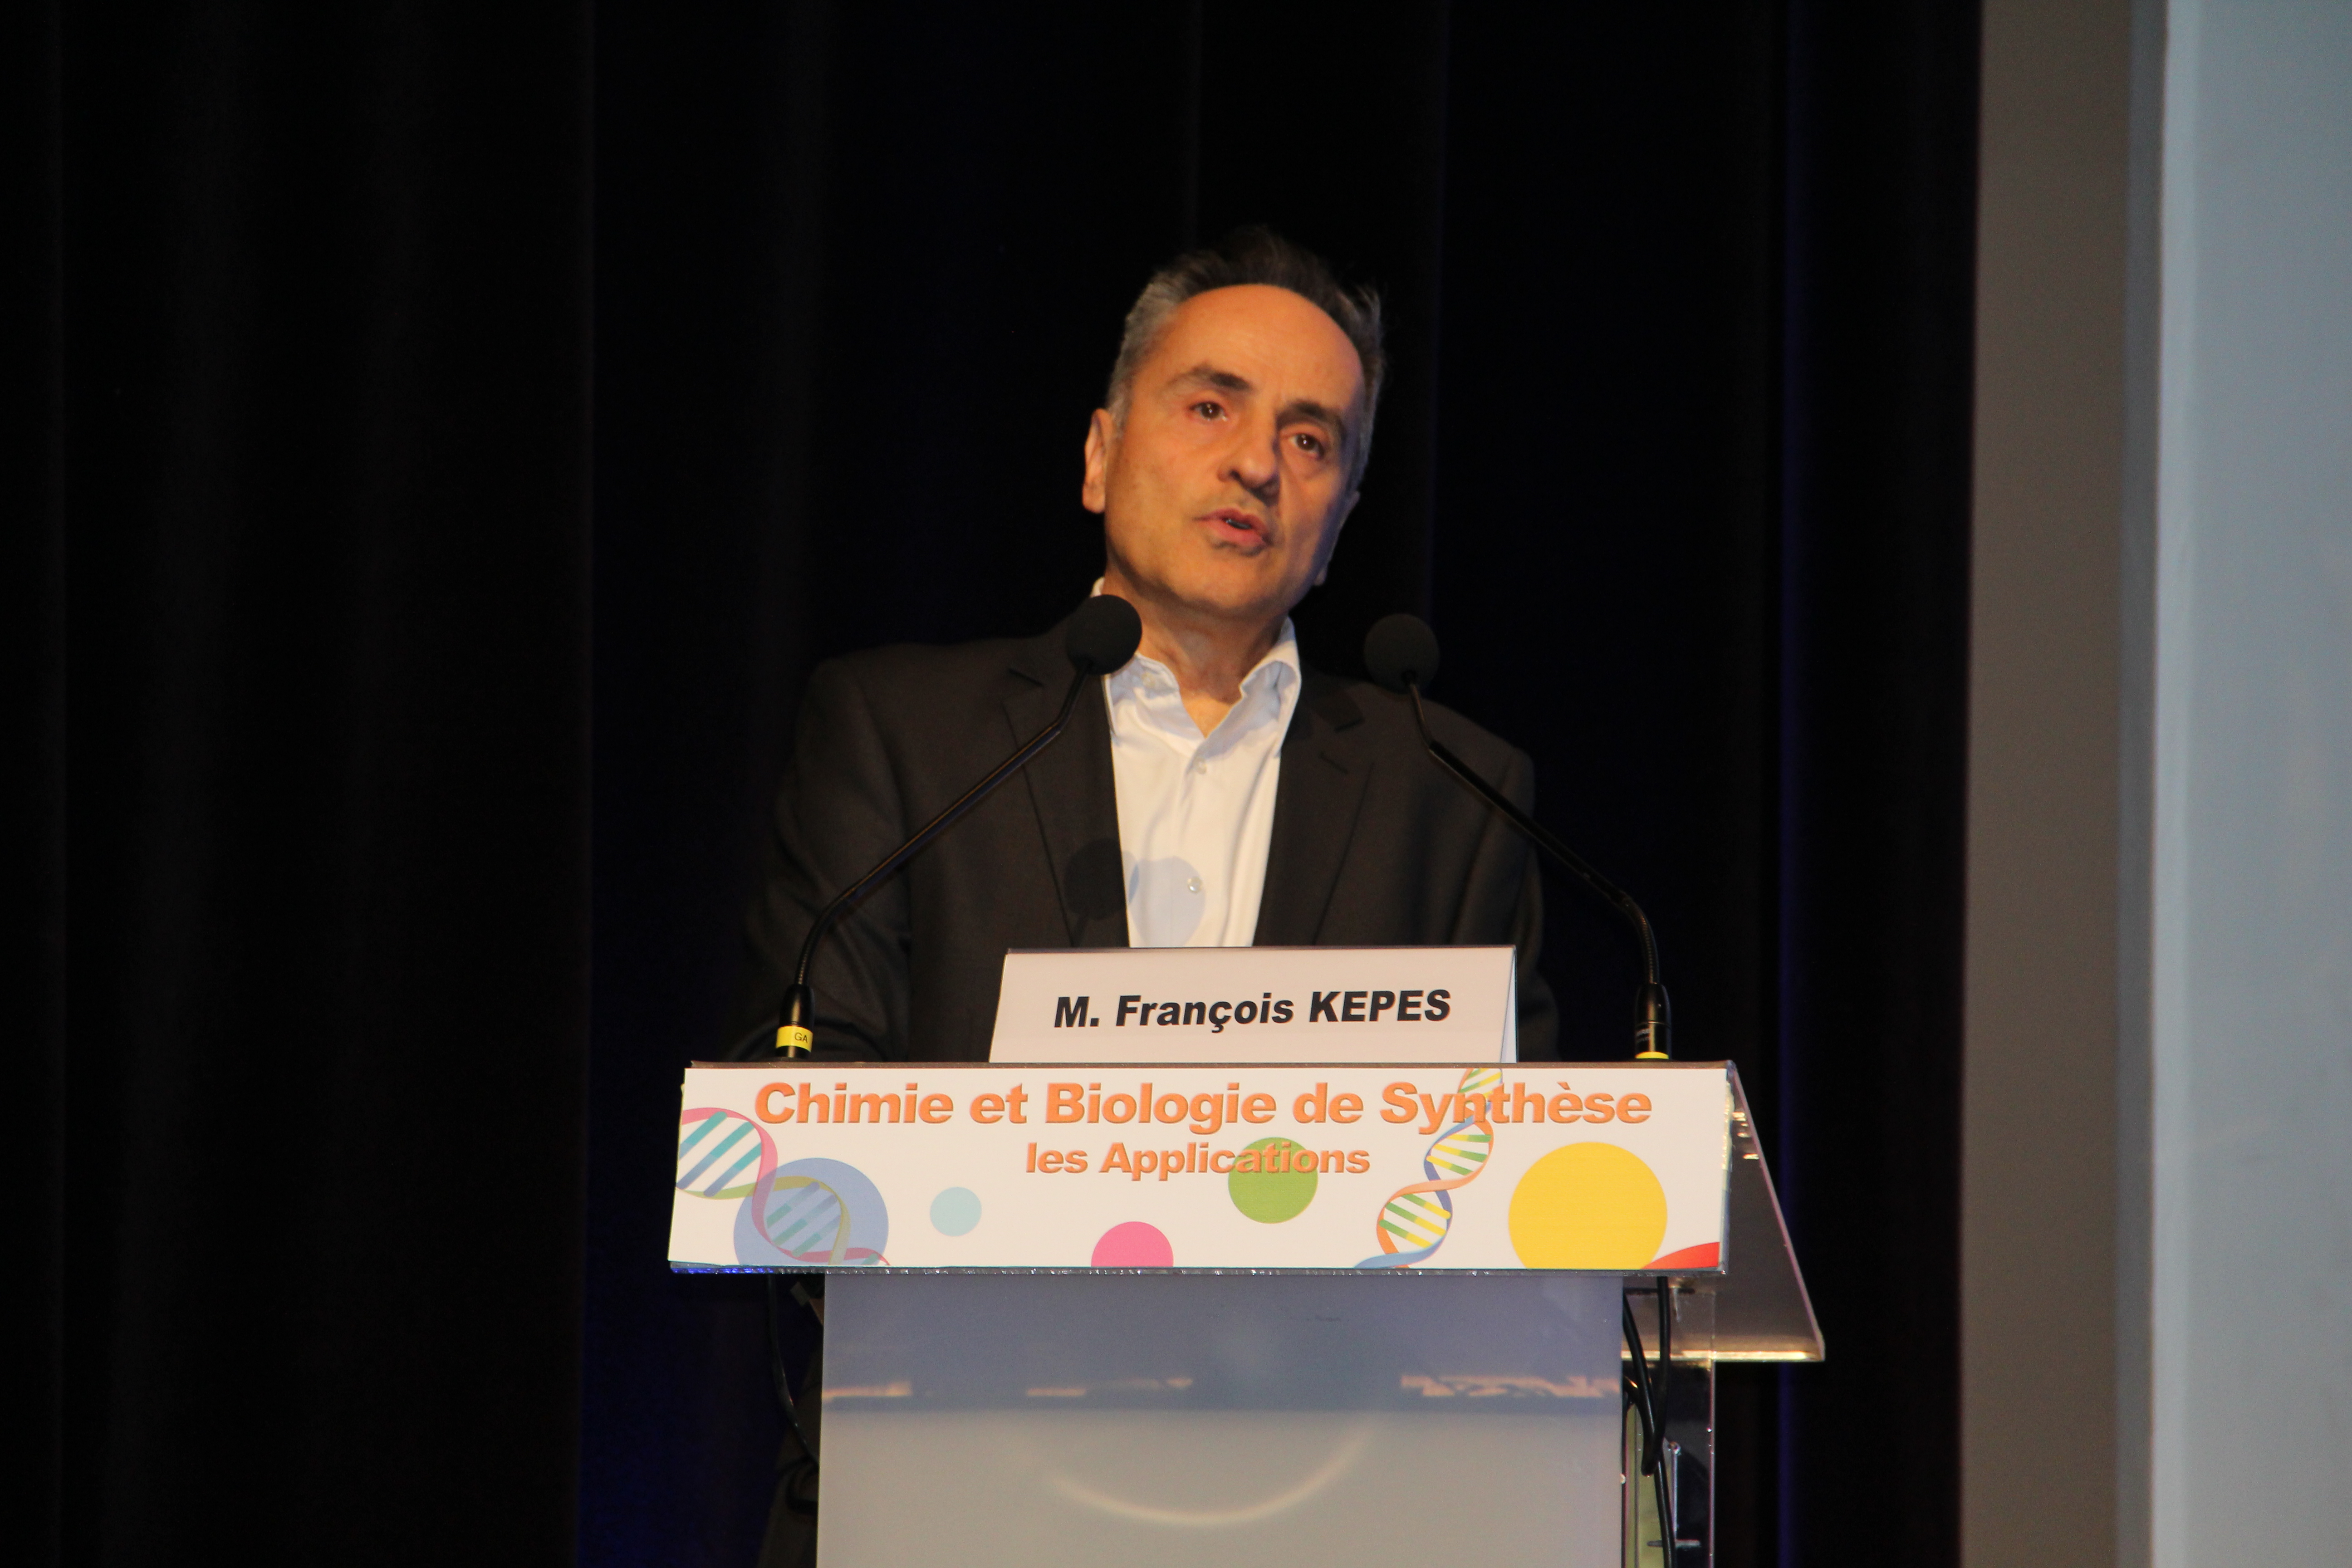 François Képès